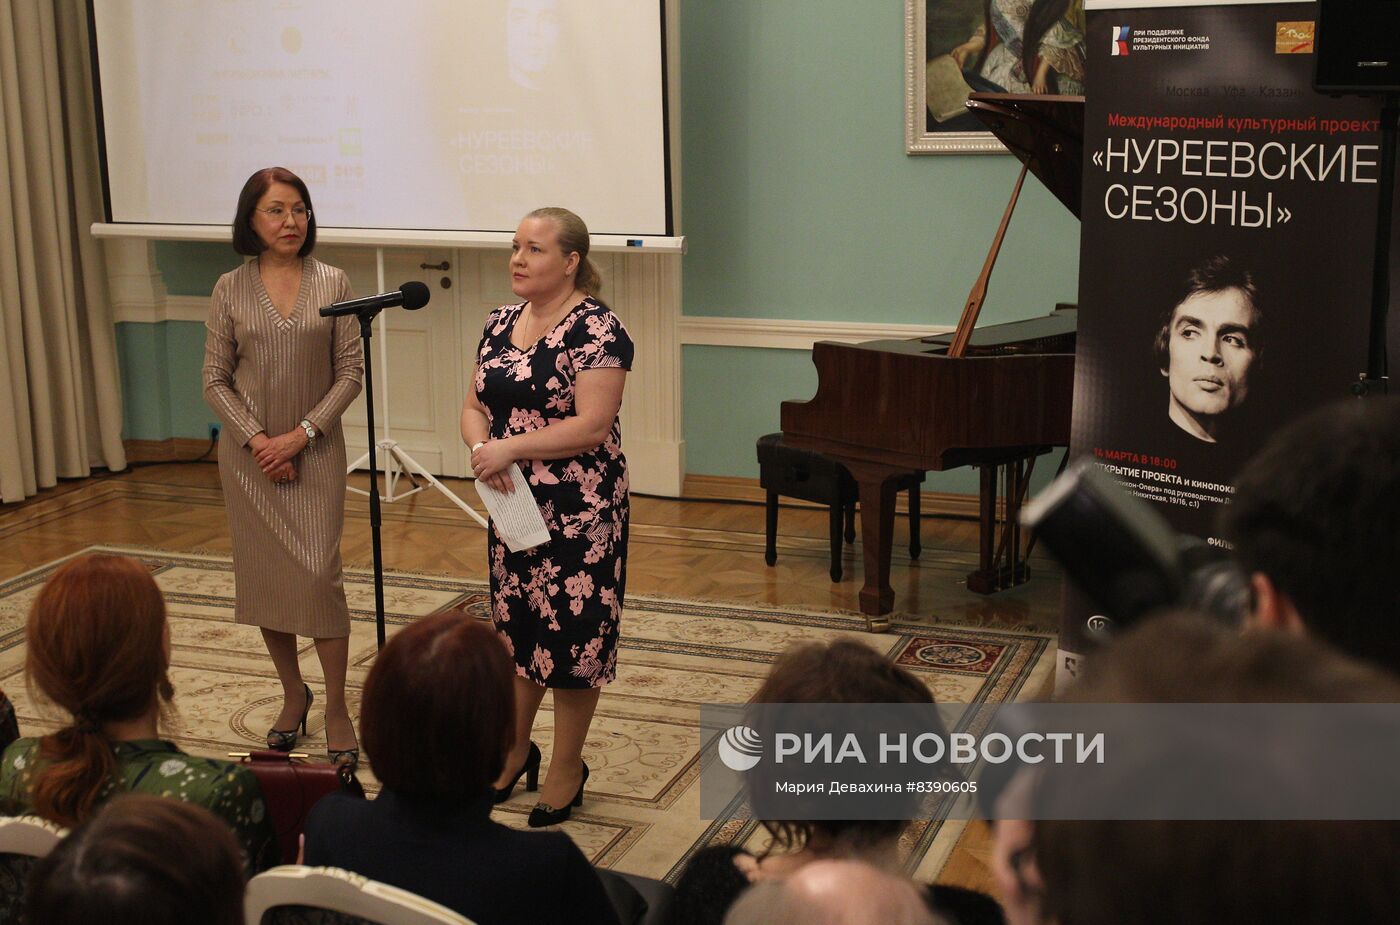 Открытие культурного проекта "Нуреевские сезоны" в Москве